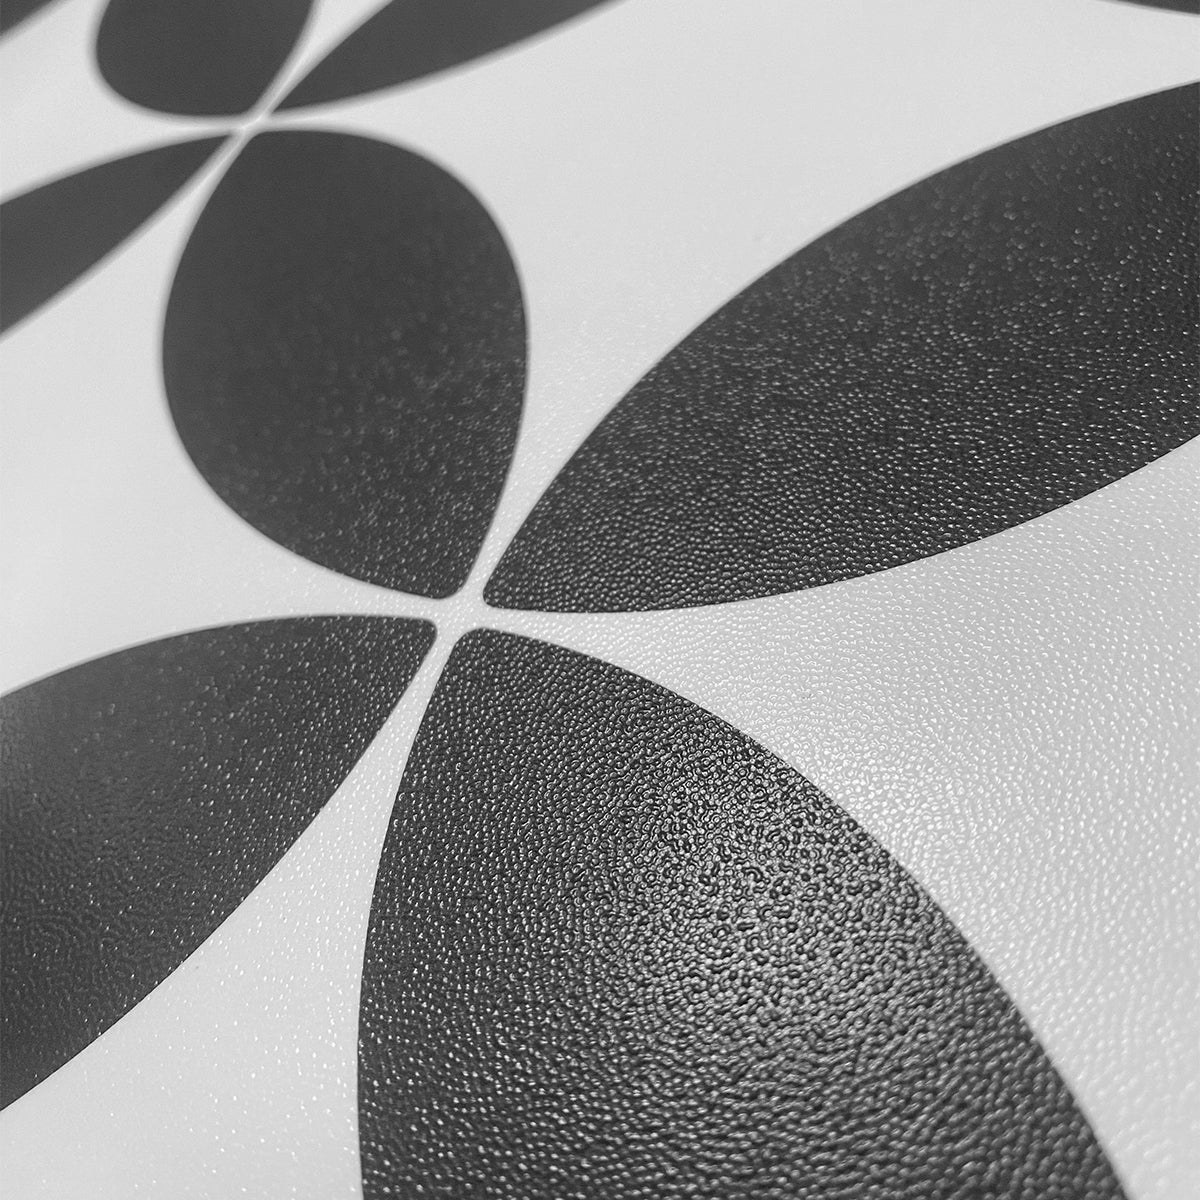 Vinyl Floor Stick on Tile - Black and White Star